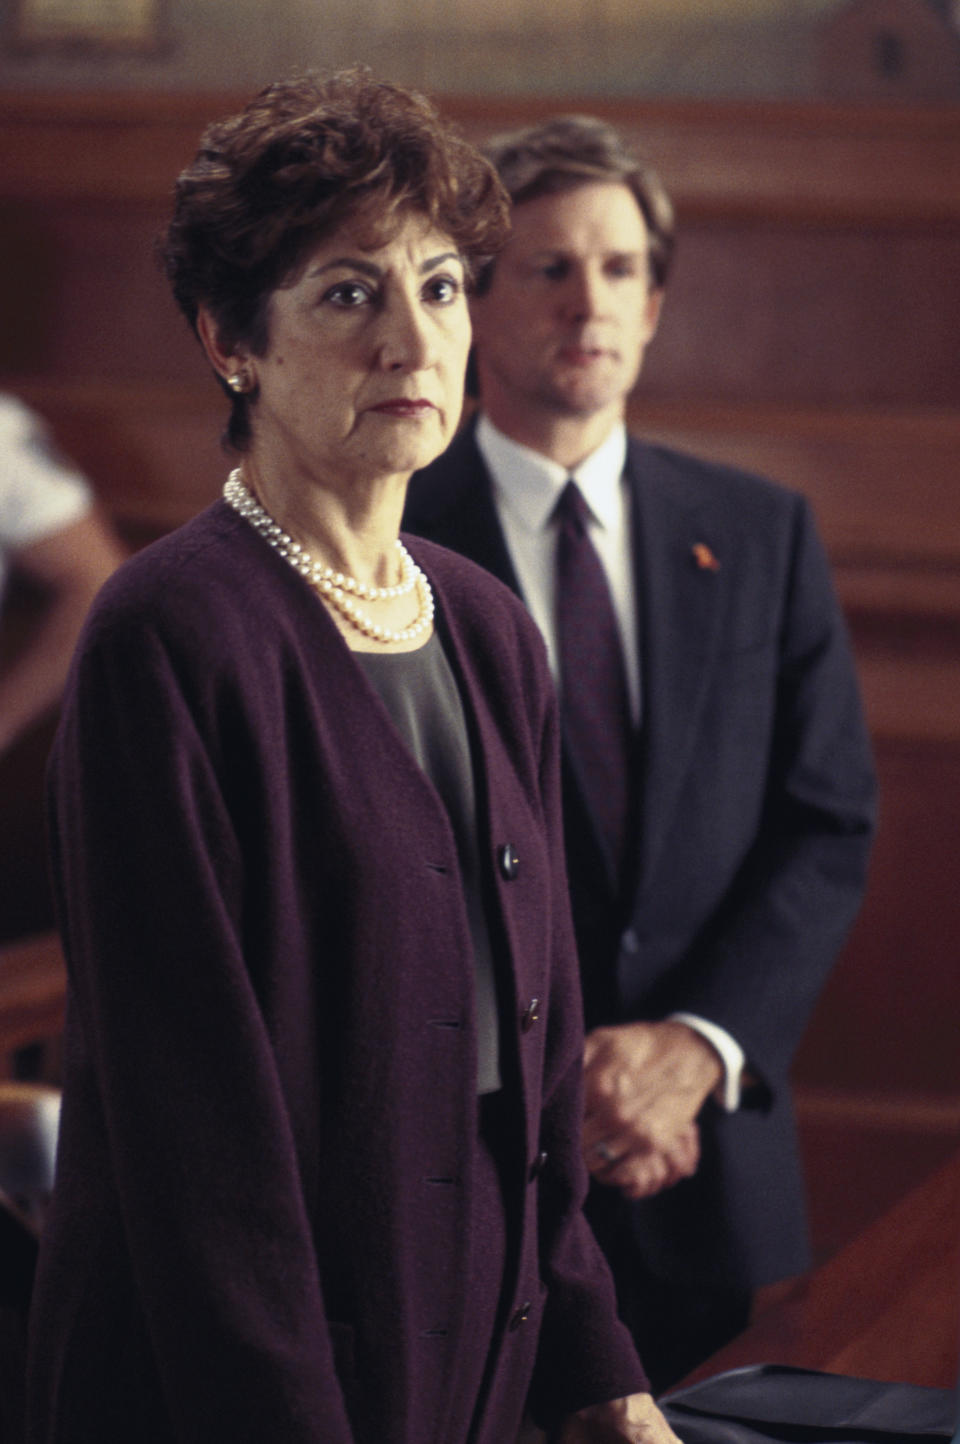 Joanna Merlin in ‘Law & Order,’ 1994